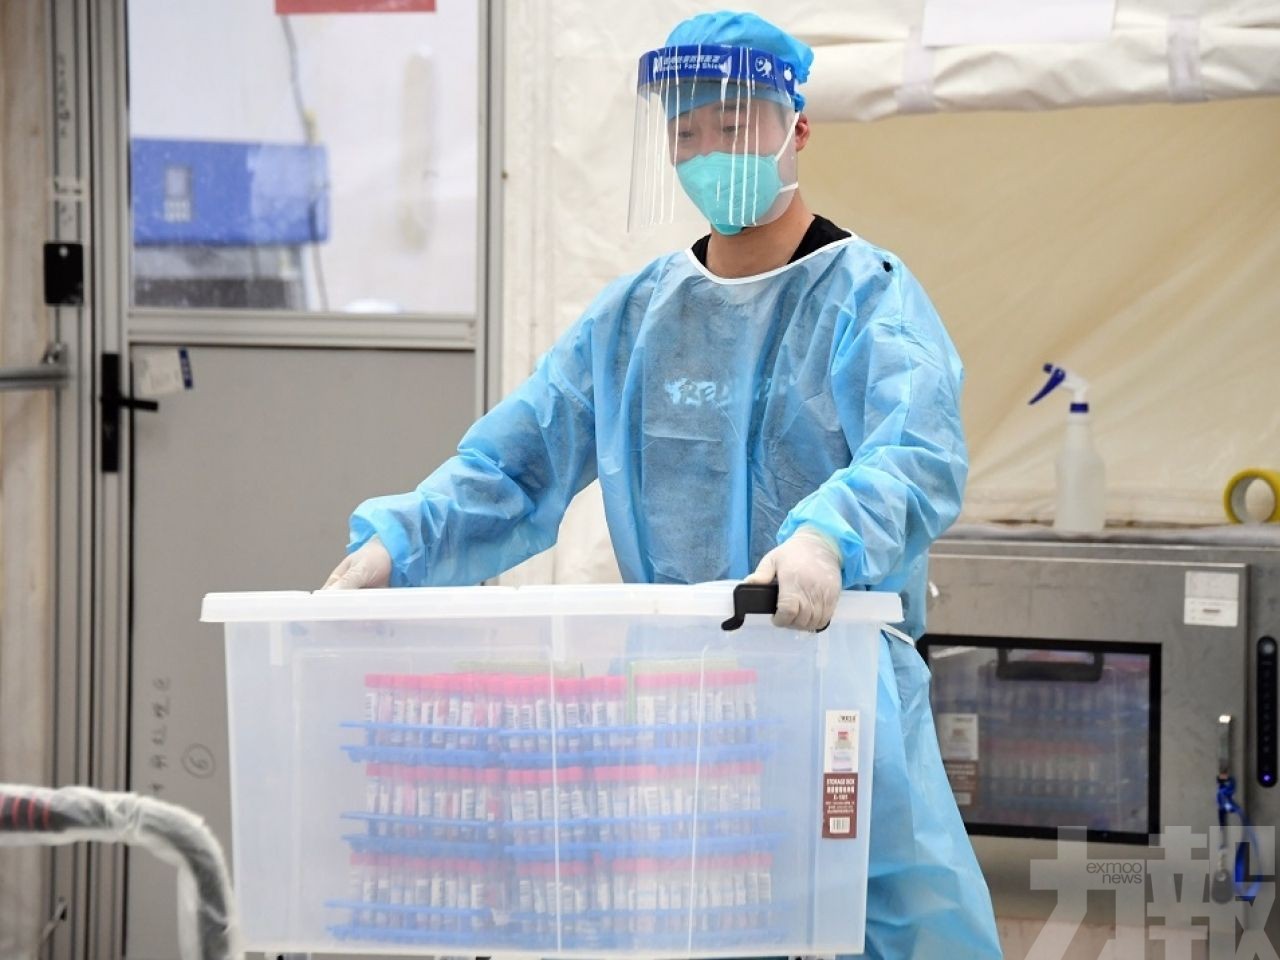 北京朴石醫學檢驗實驗室7人被批捕